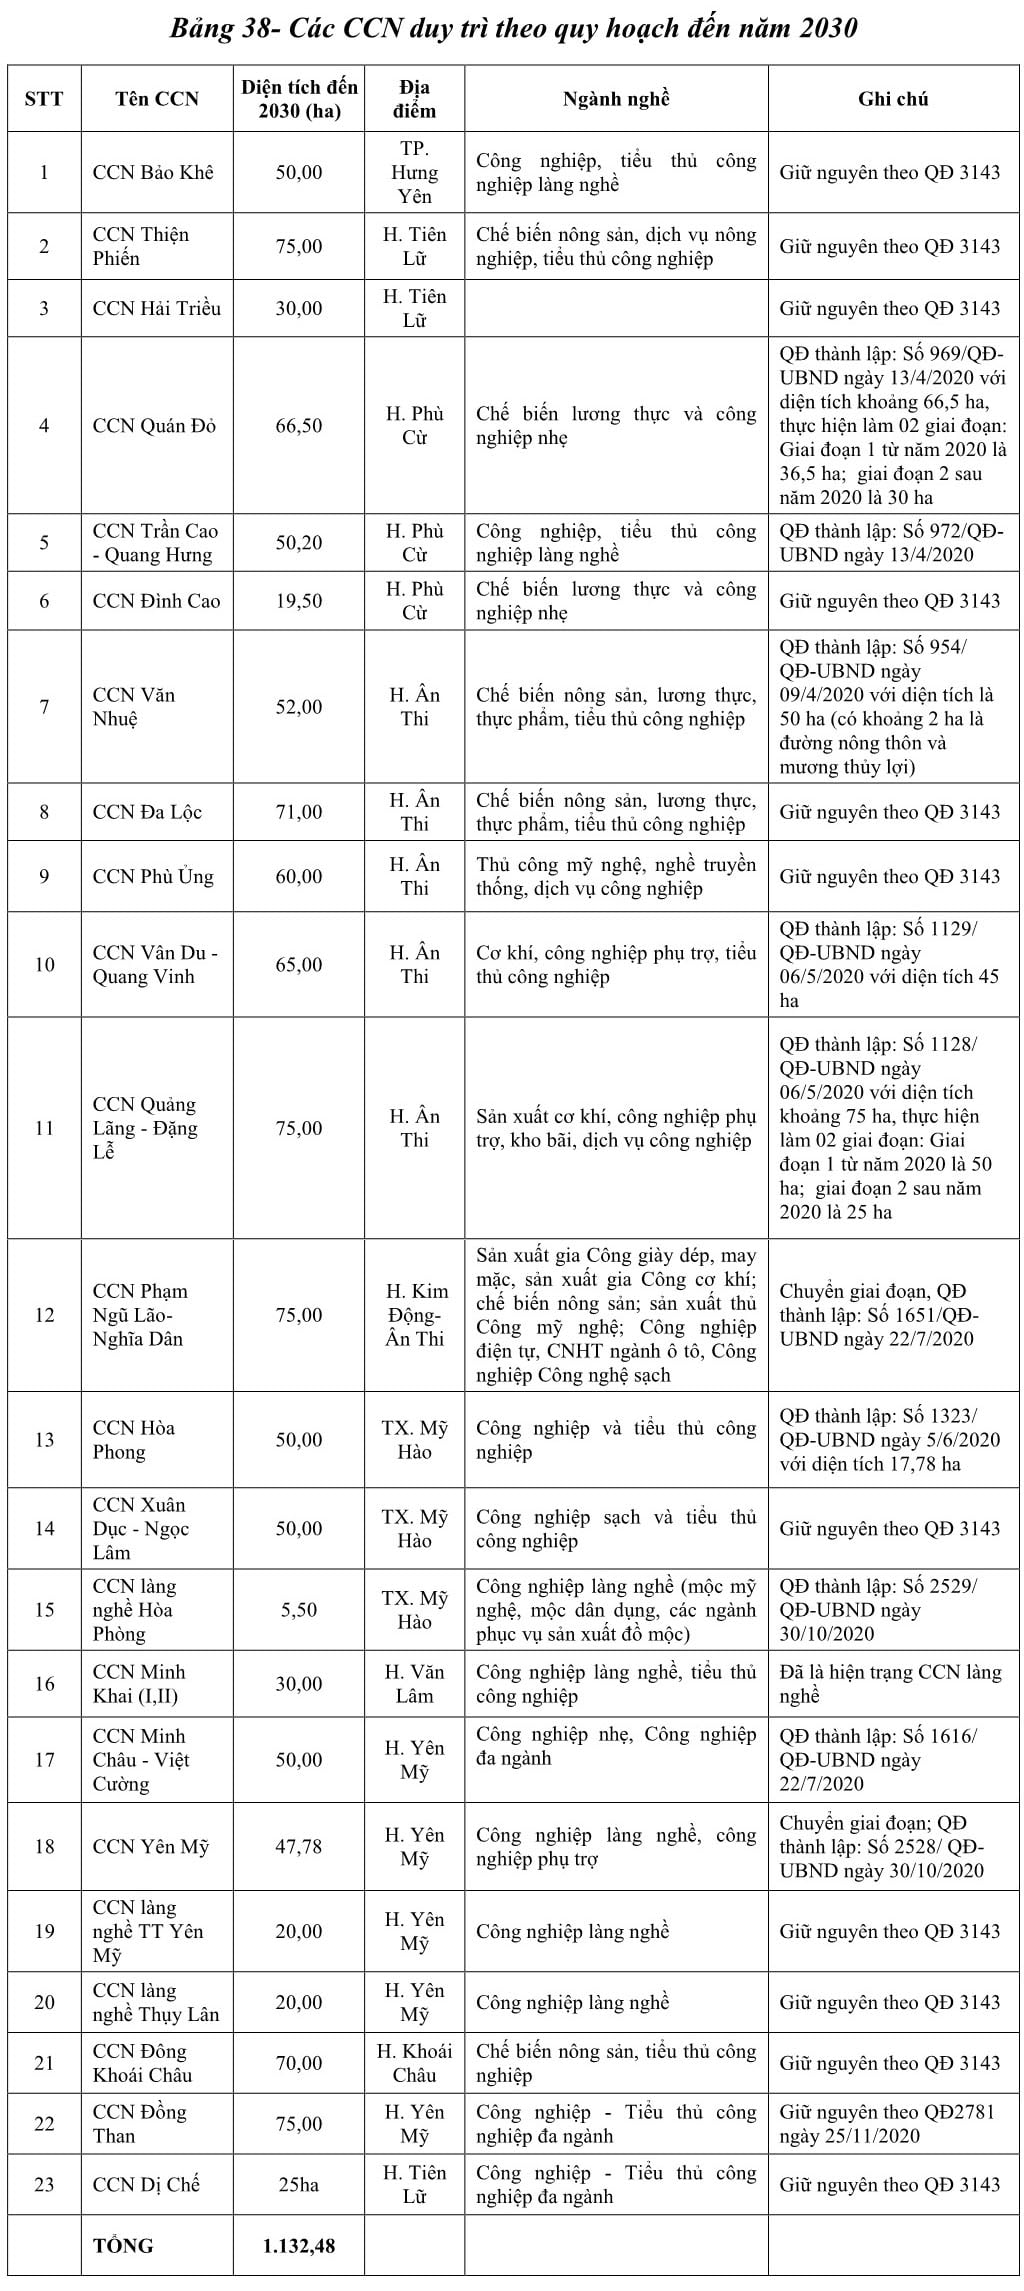 Danh sách các cụm công nghiệp Hưng Yên duy trì theo quy hoạch